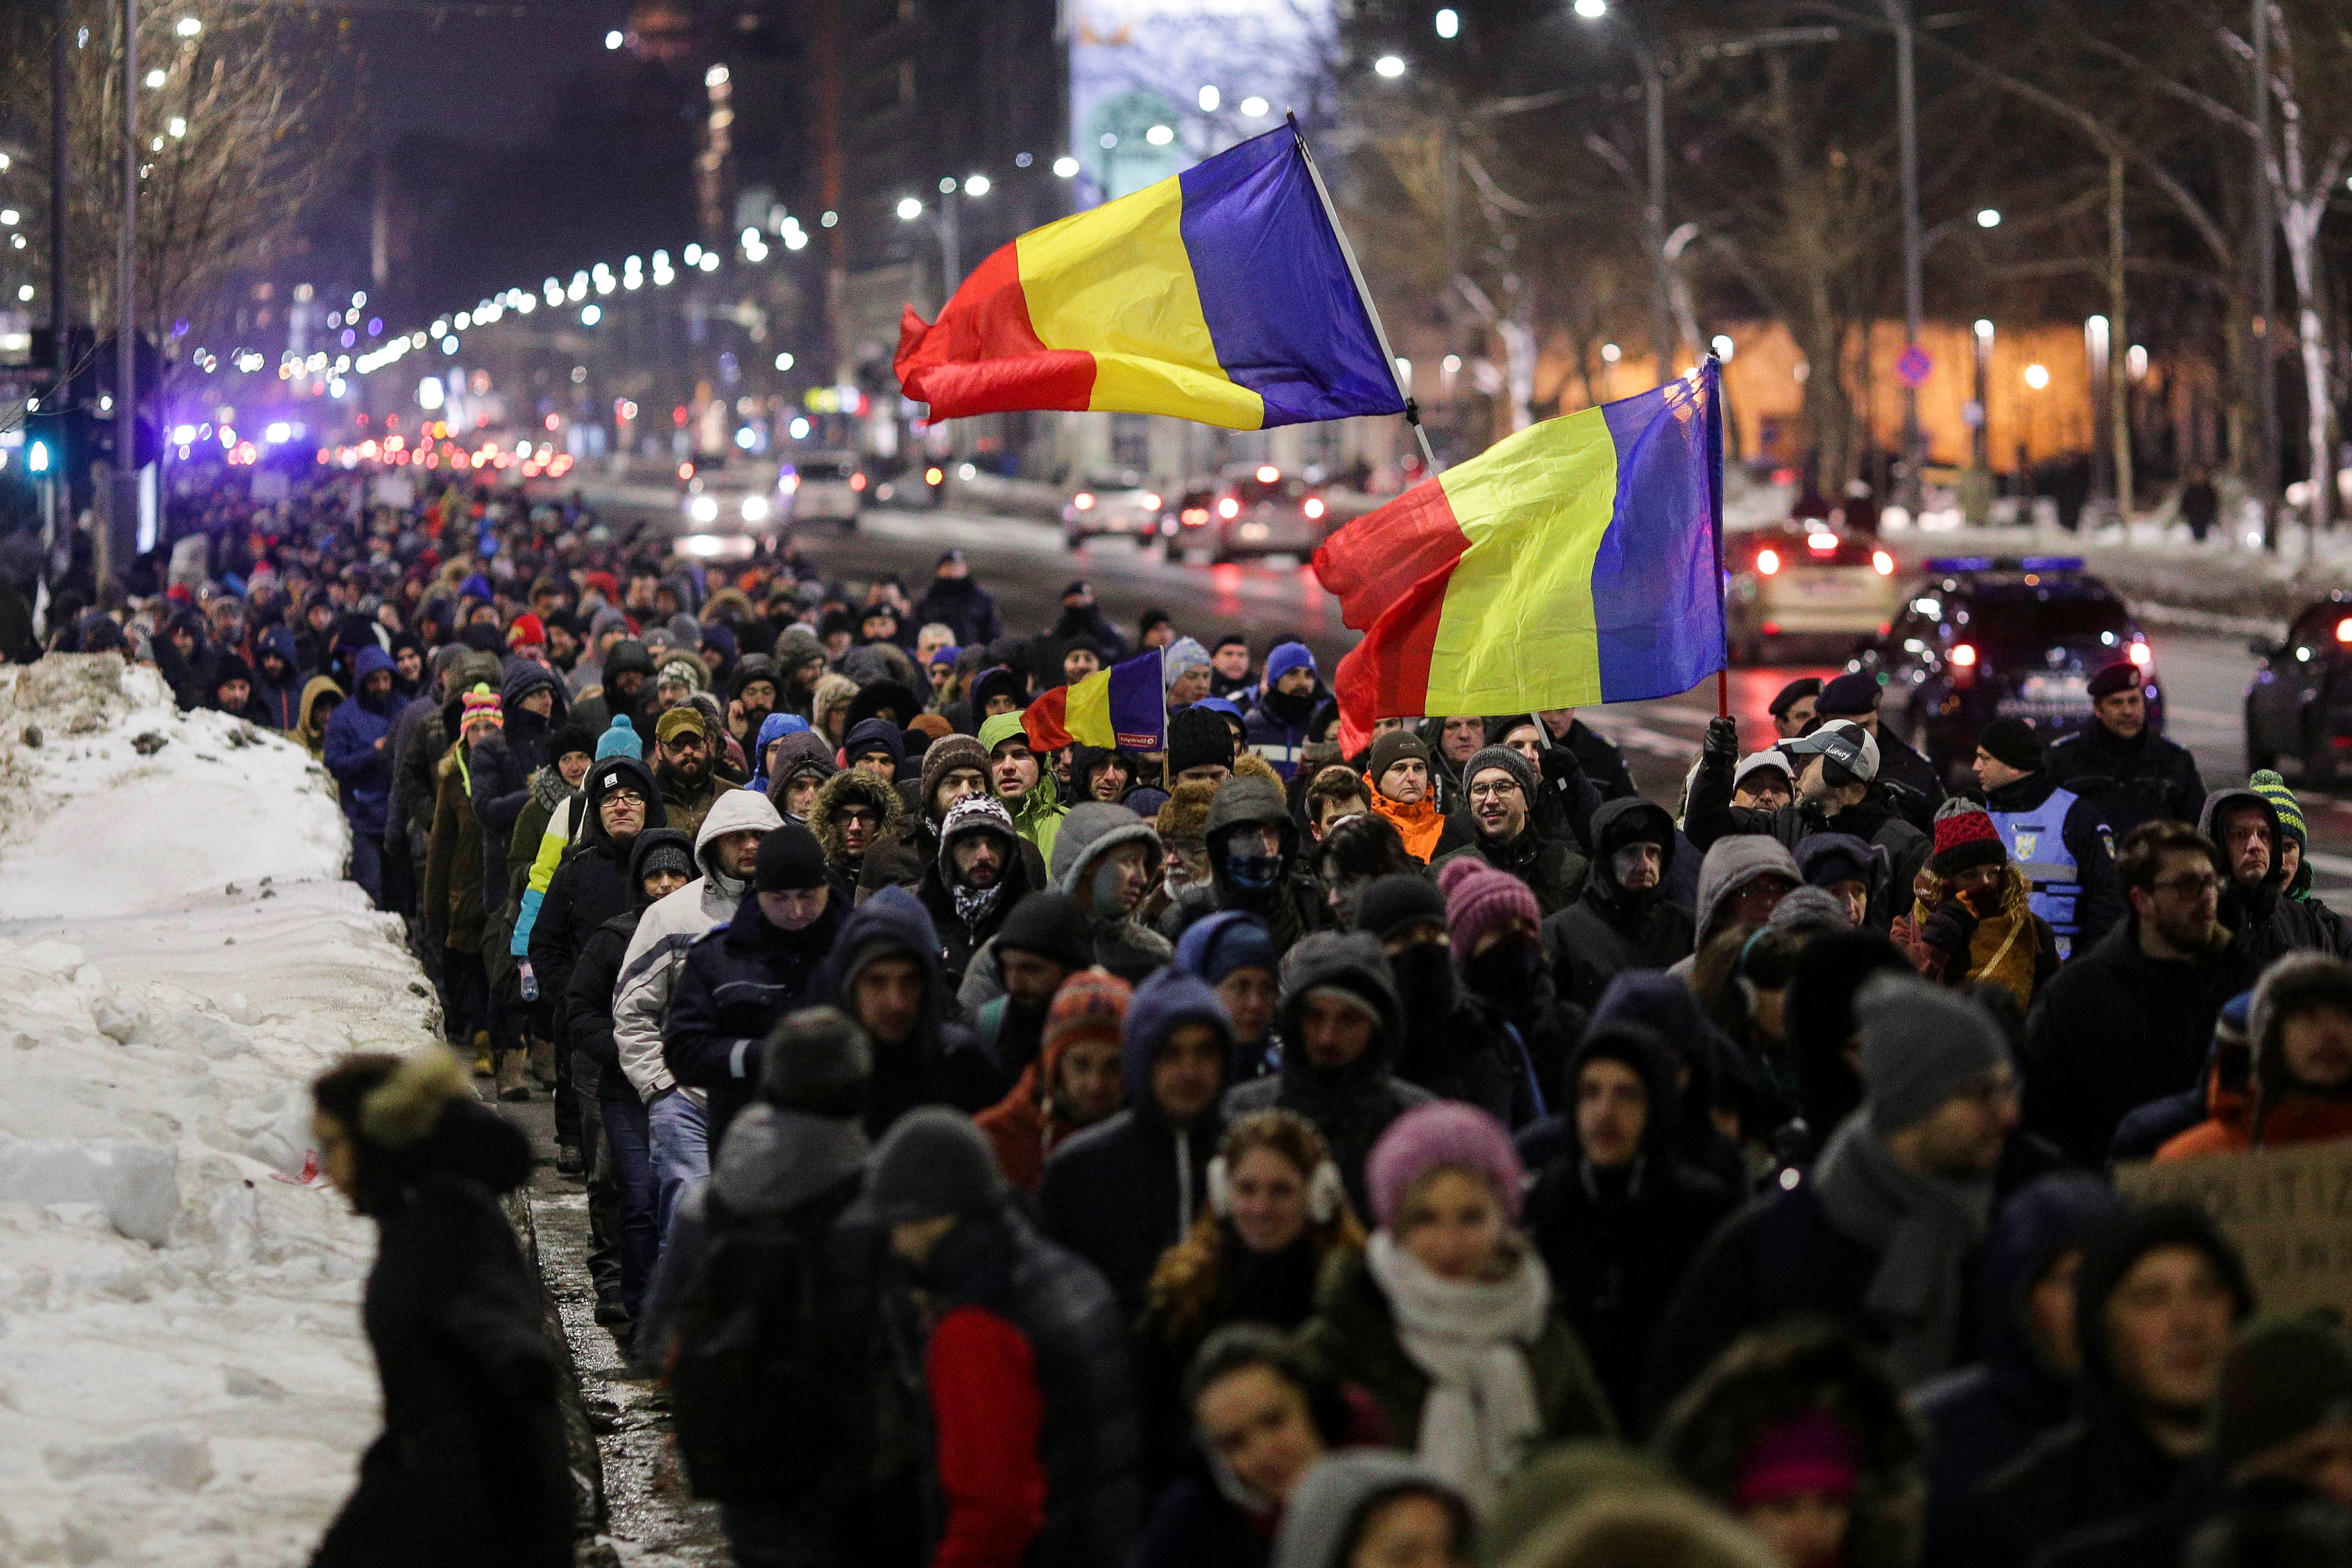   رومانيا تقر قانونا يشرع الكسب غير المشروع  والشعب يرد بالتظاهر